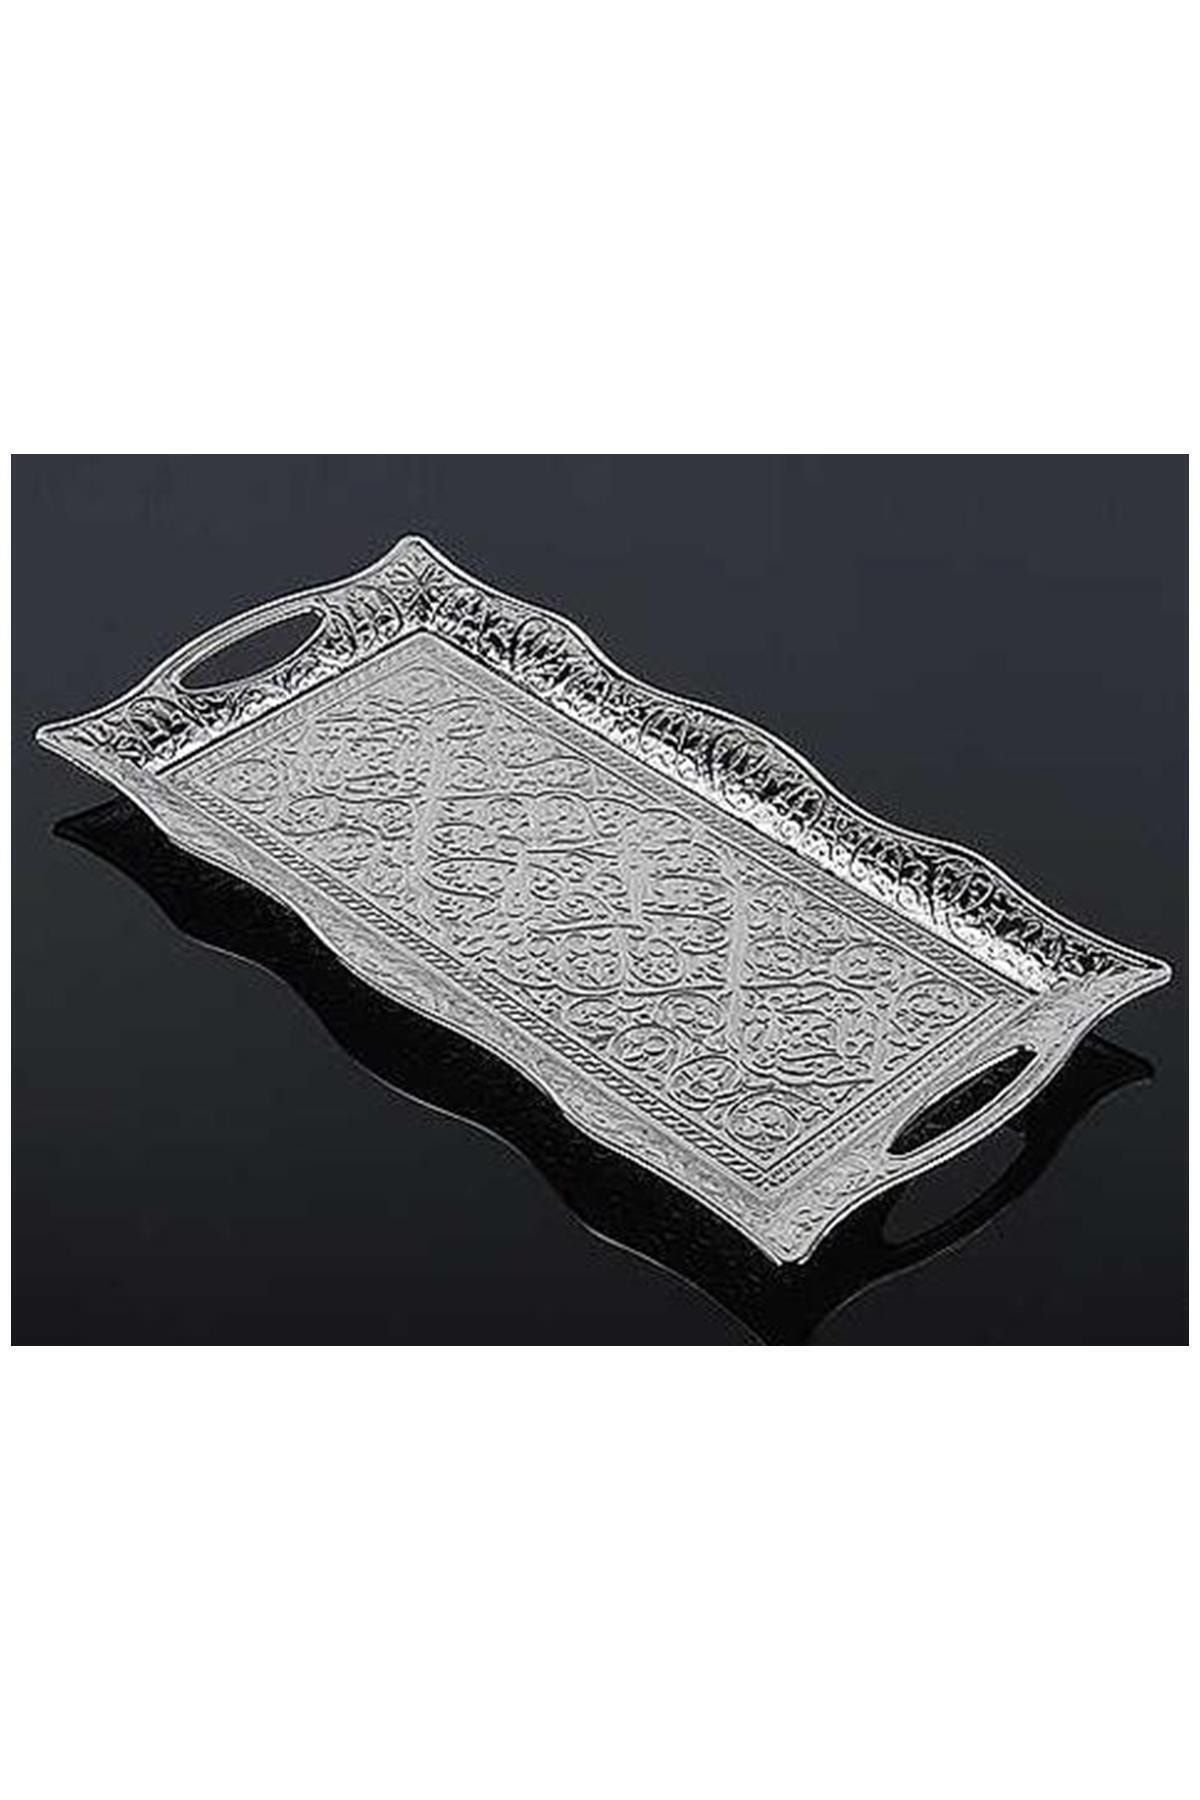 Genel Markalar Osmanlı Motifli 2 Kişilik Servis Tepsisi - Gümüş (clz)